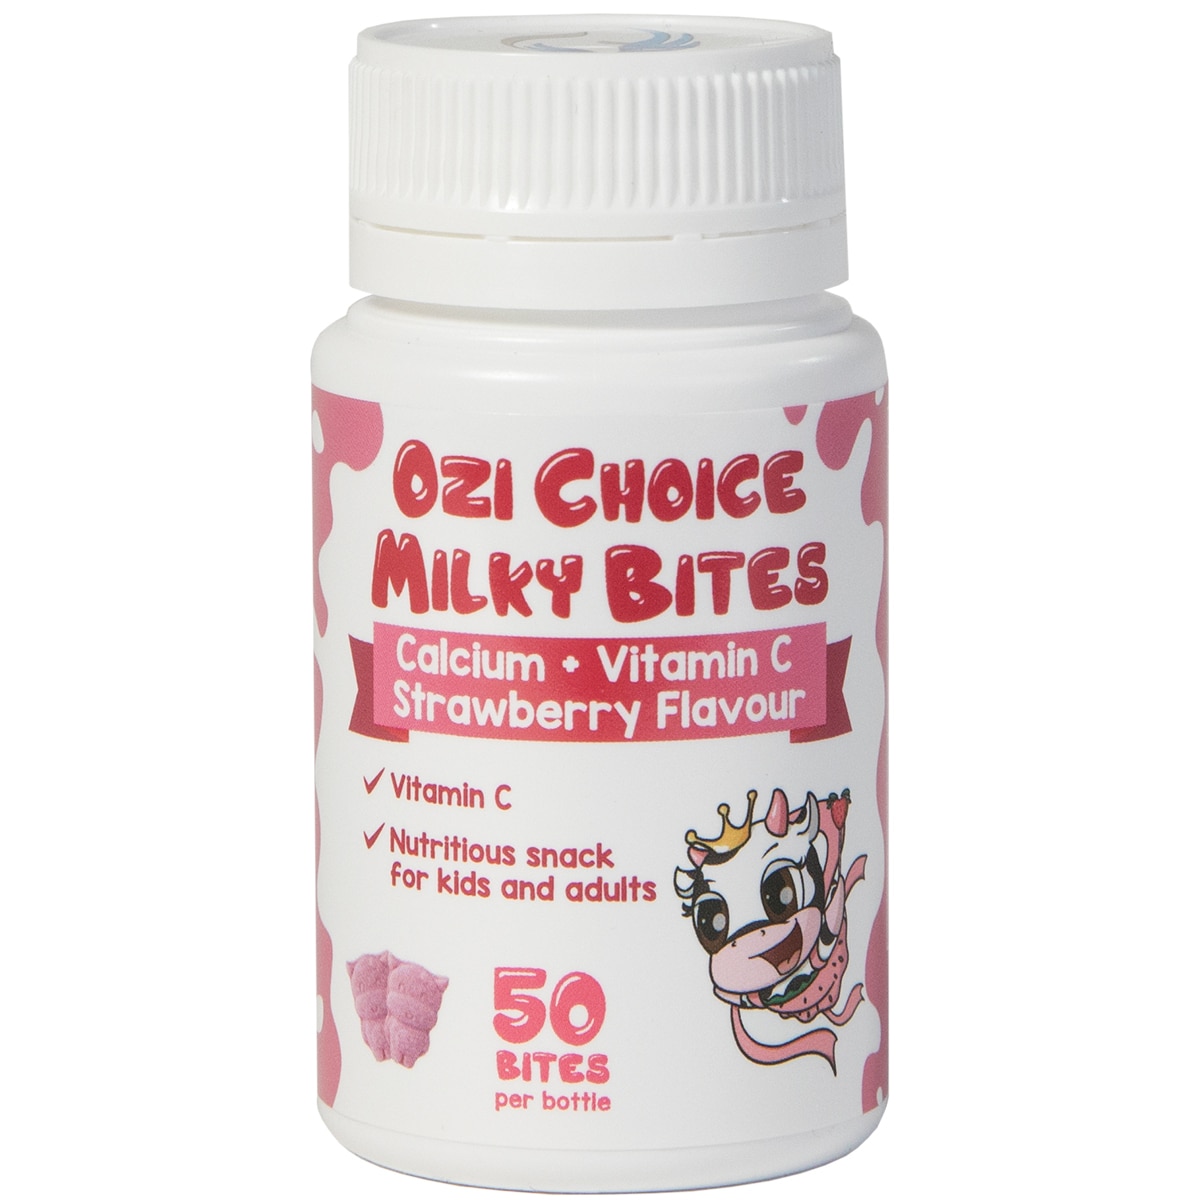 Ozi Choice Milky Bites - Strawberry